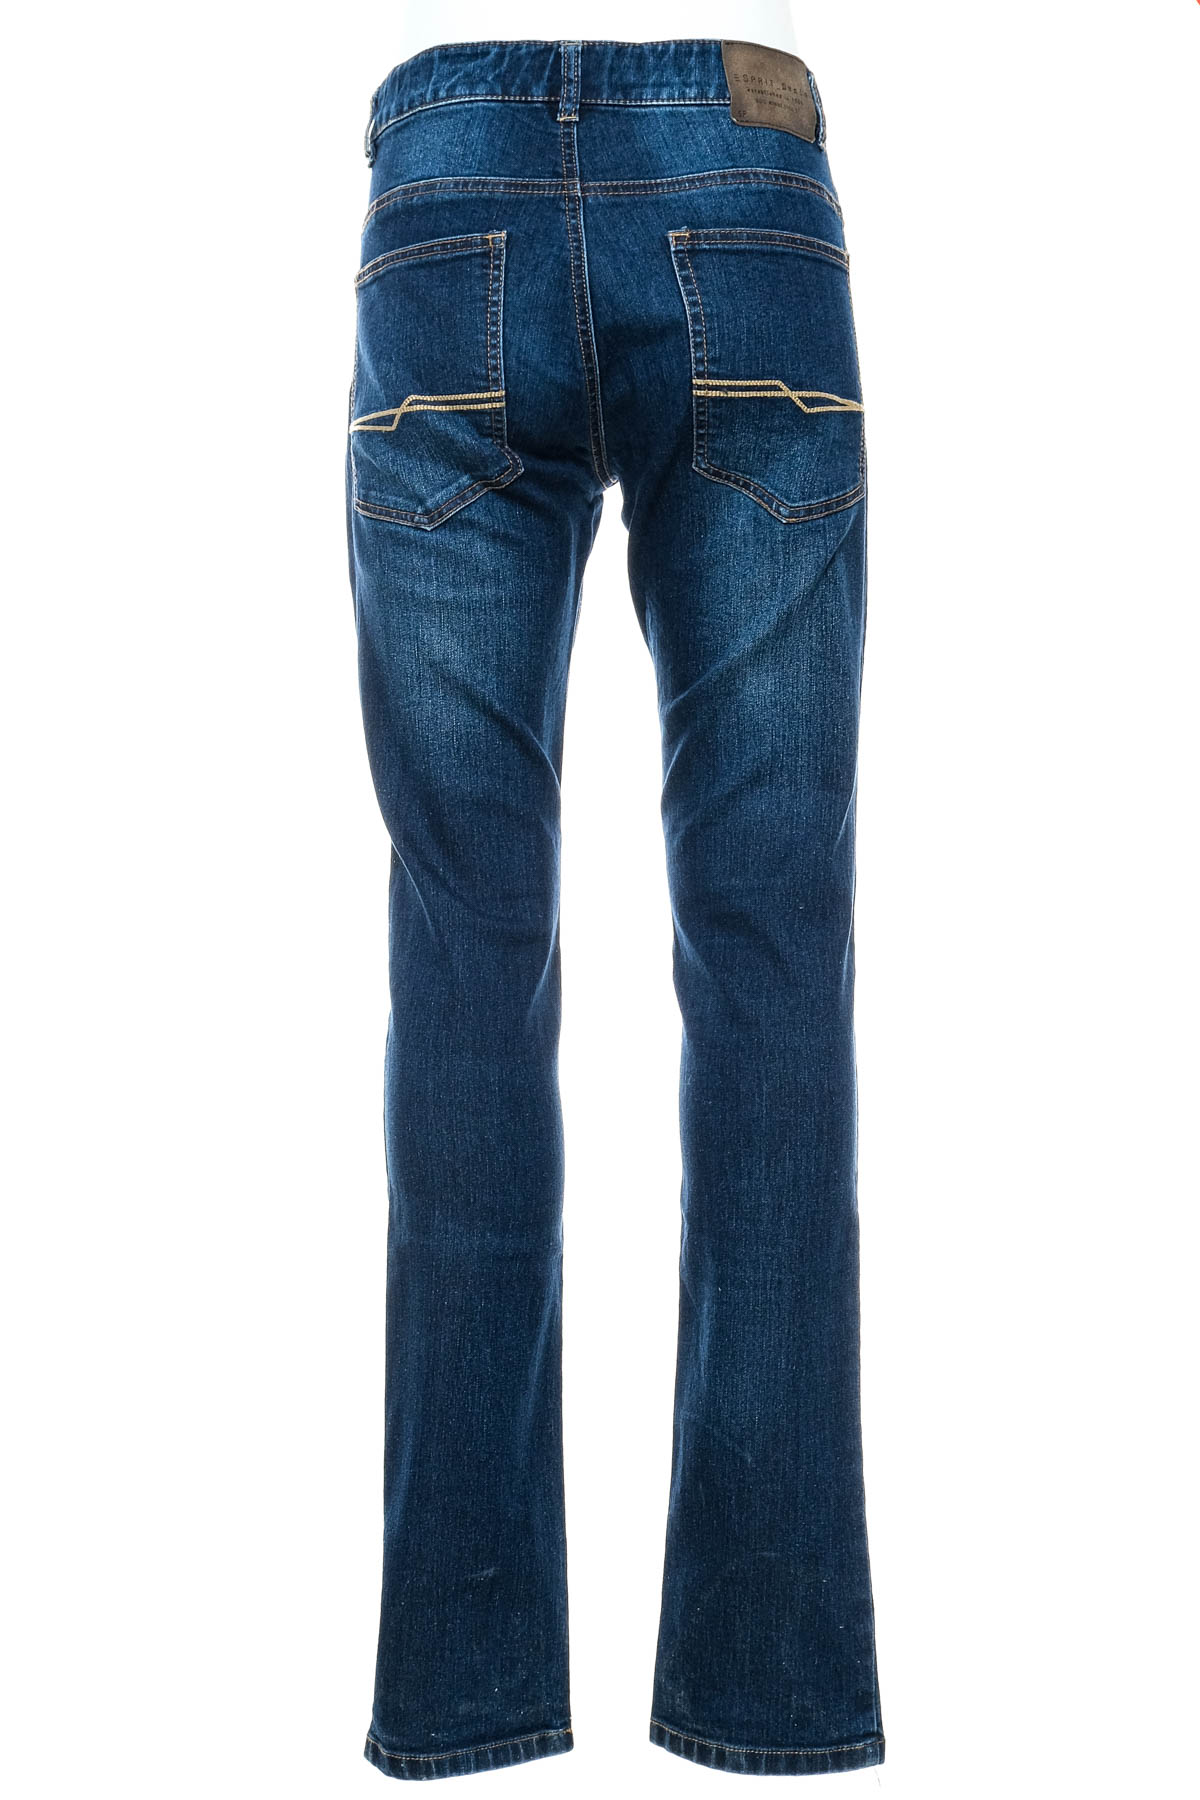 Jeans pentru băiat - ESPRIT - 1